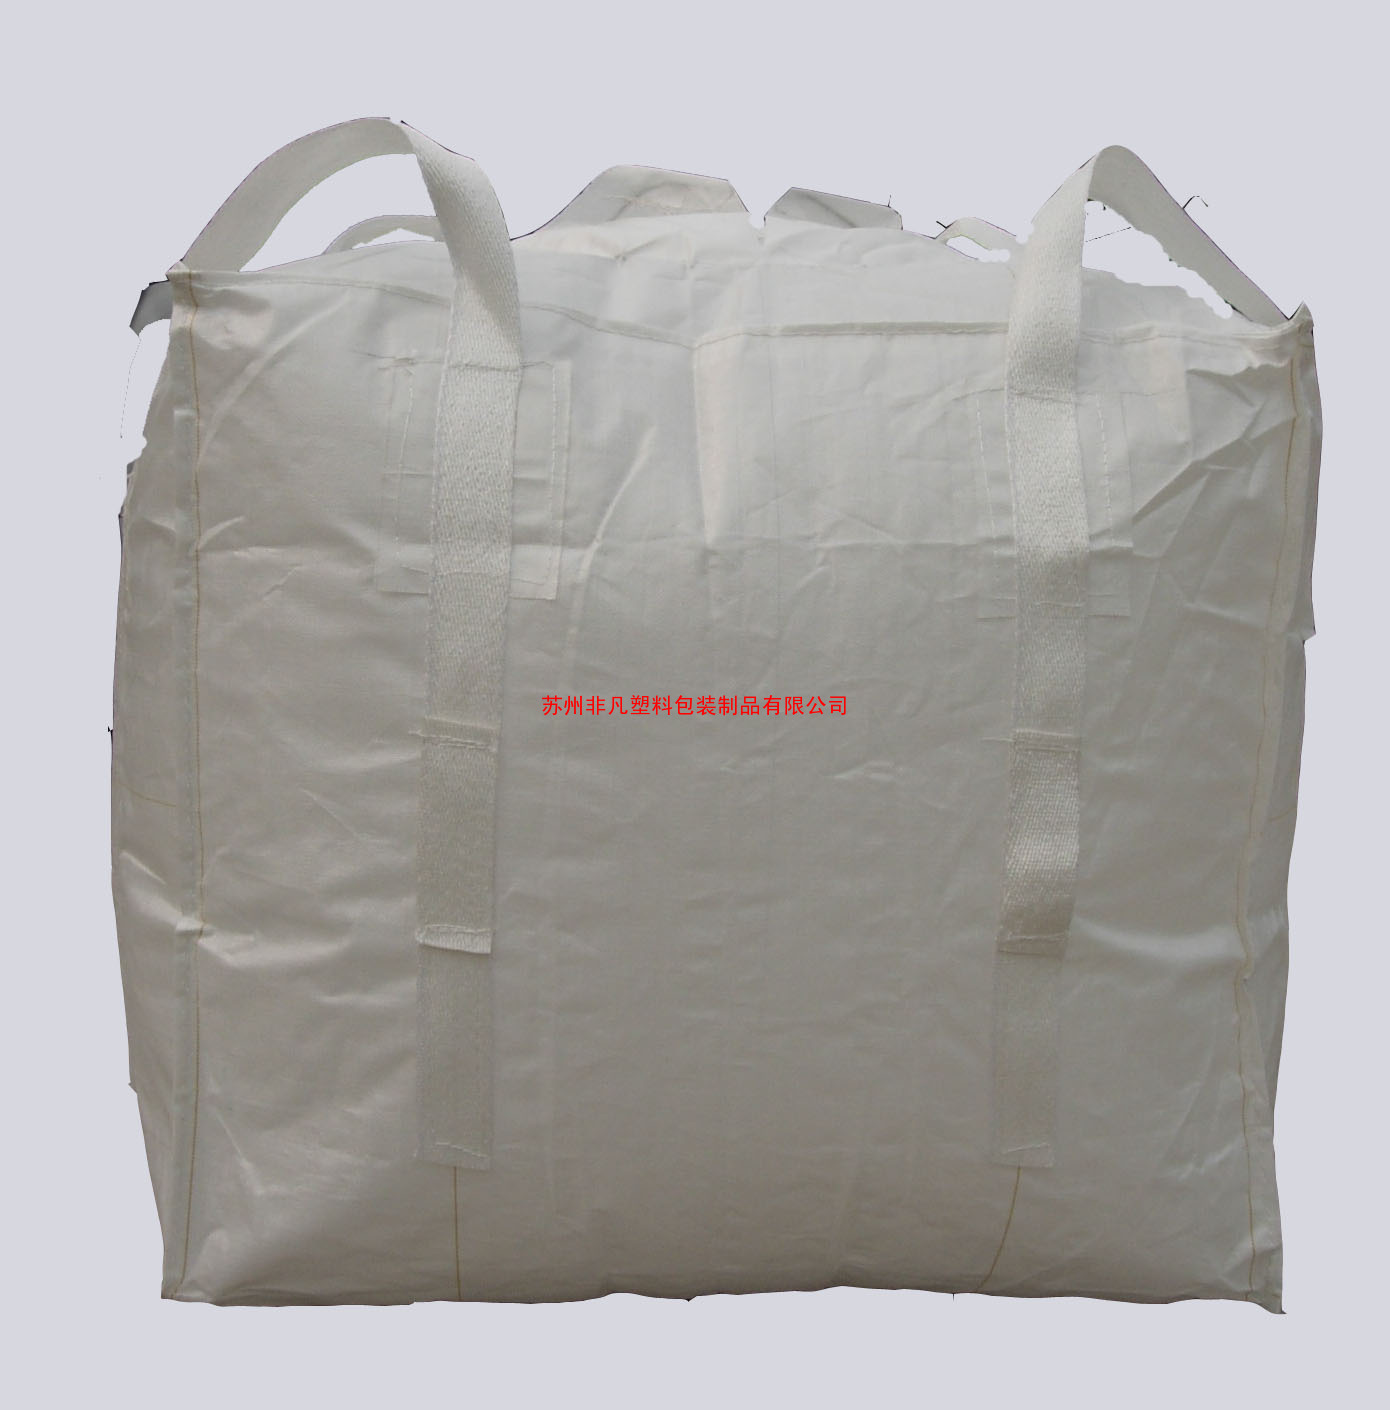 字母袋/立方集装袋/立体集装袋/印刷吨袋